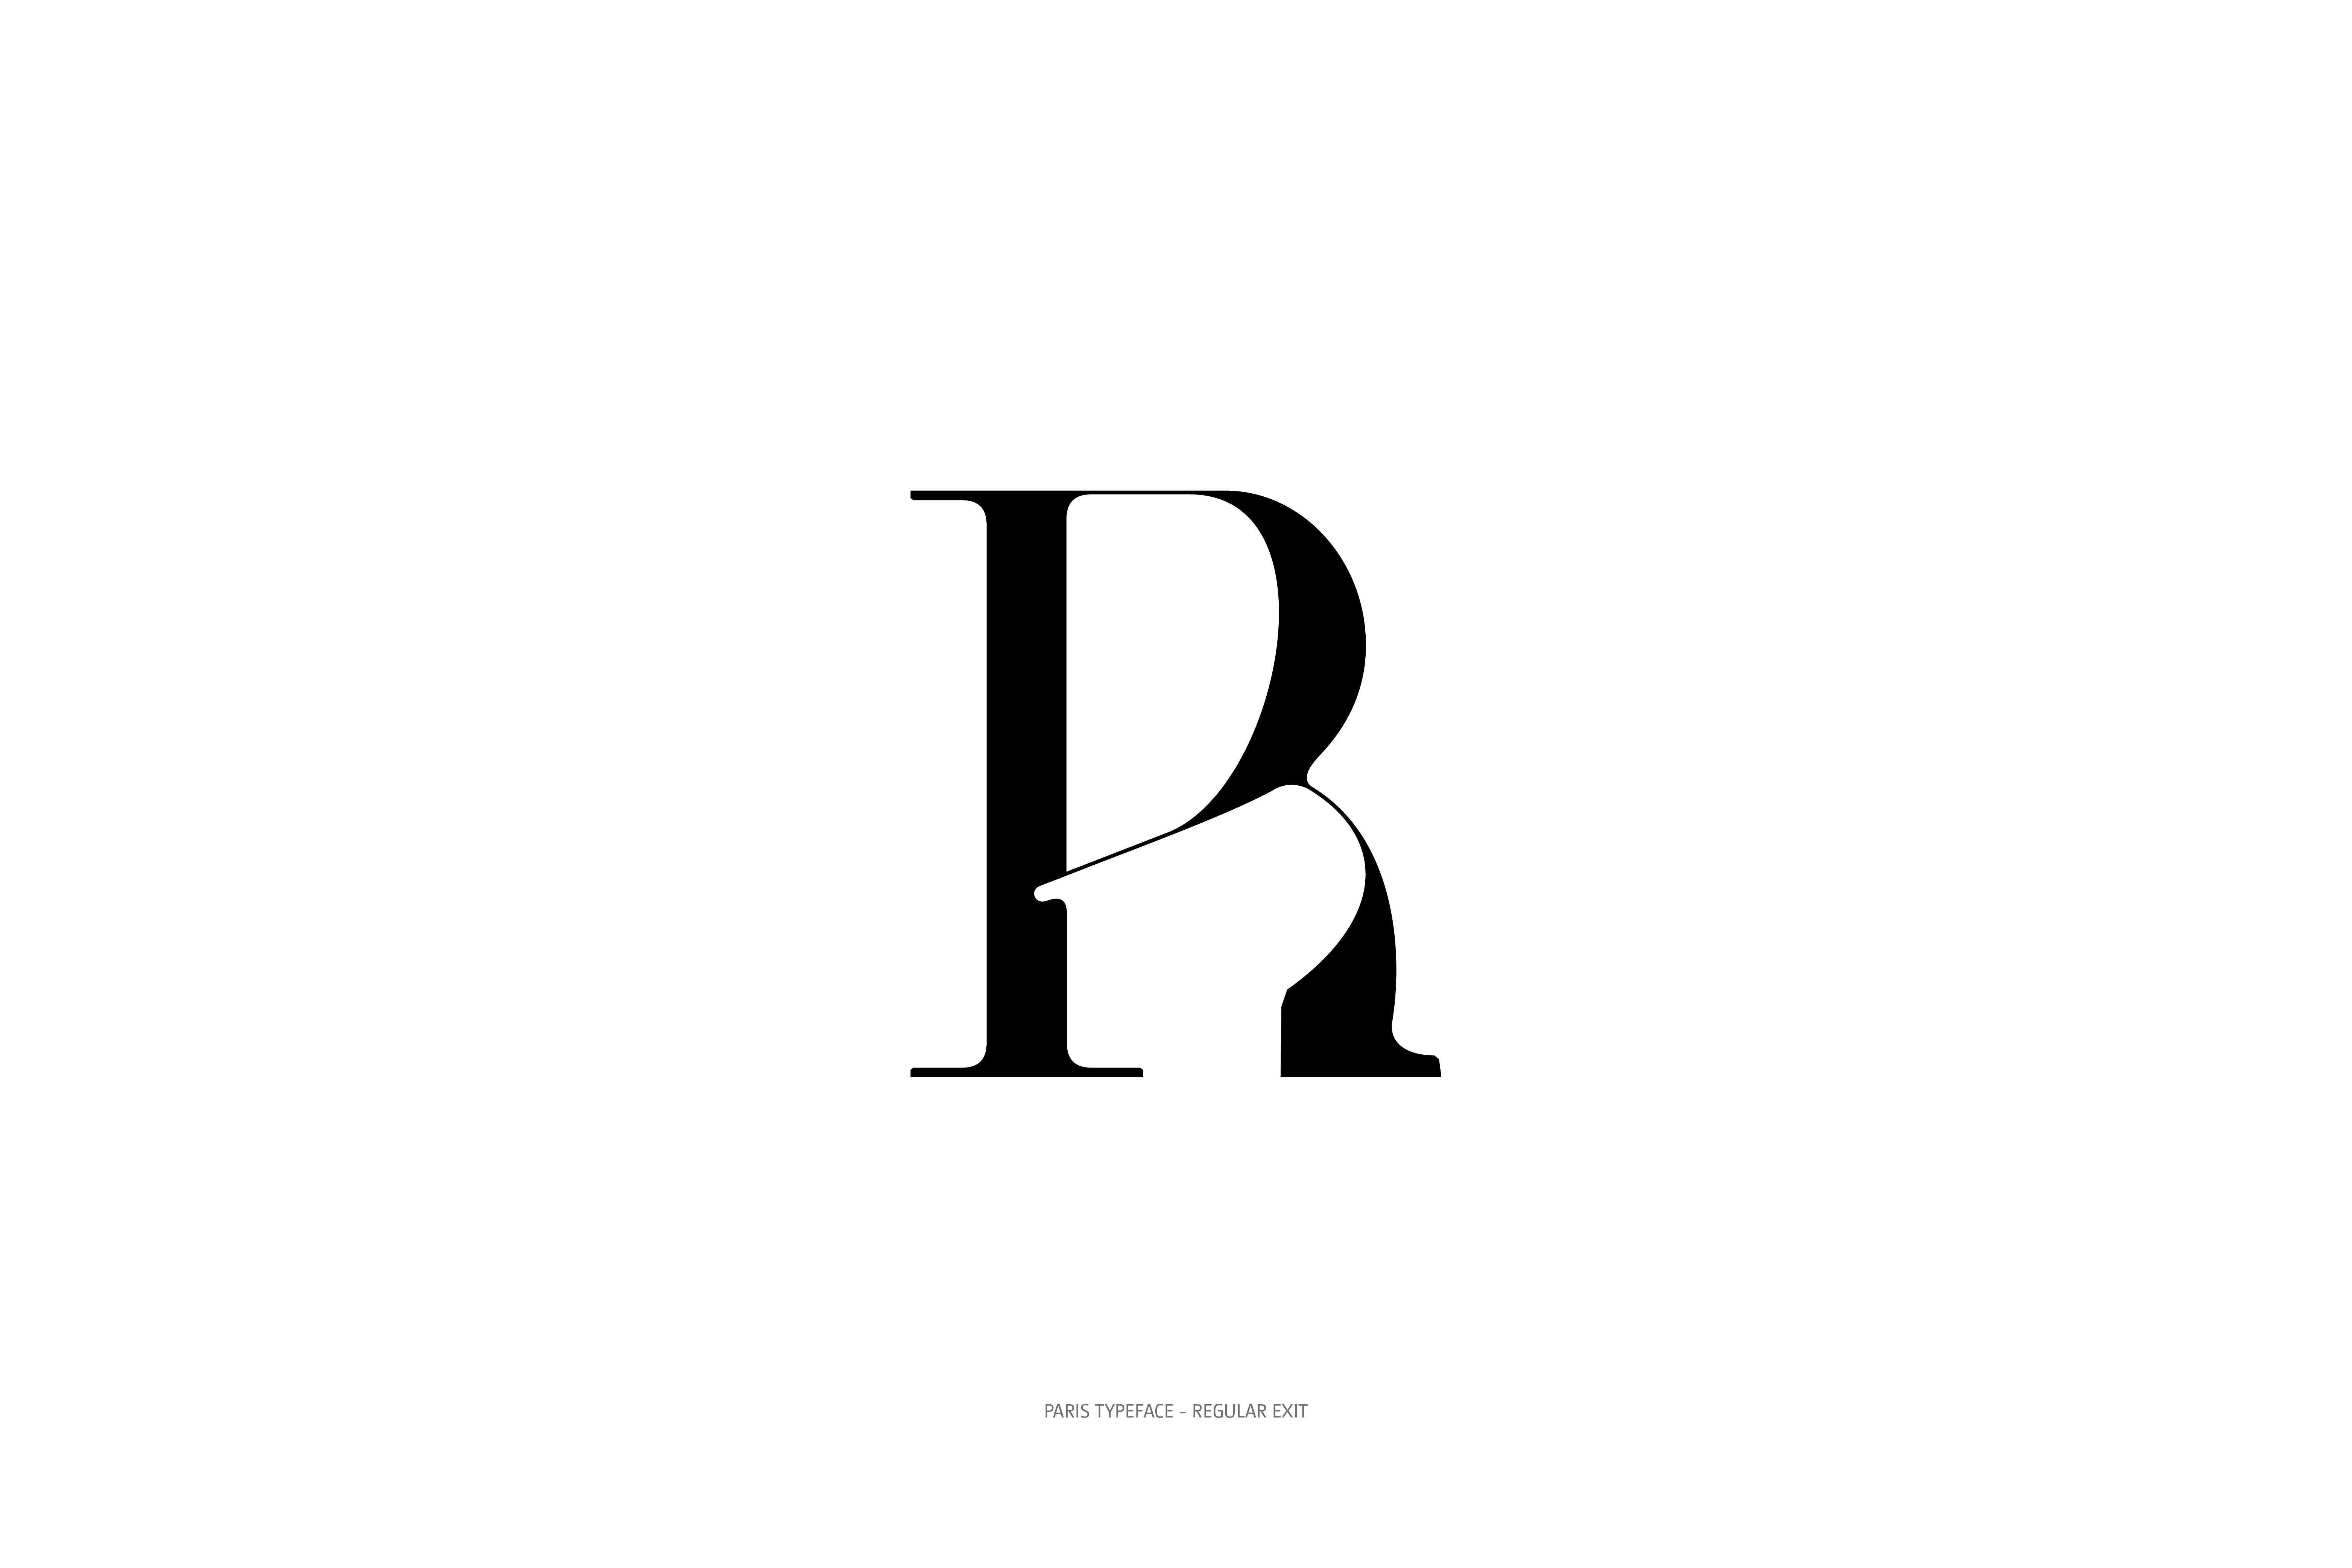 Paris Typeface Regular Exit R